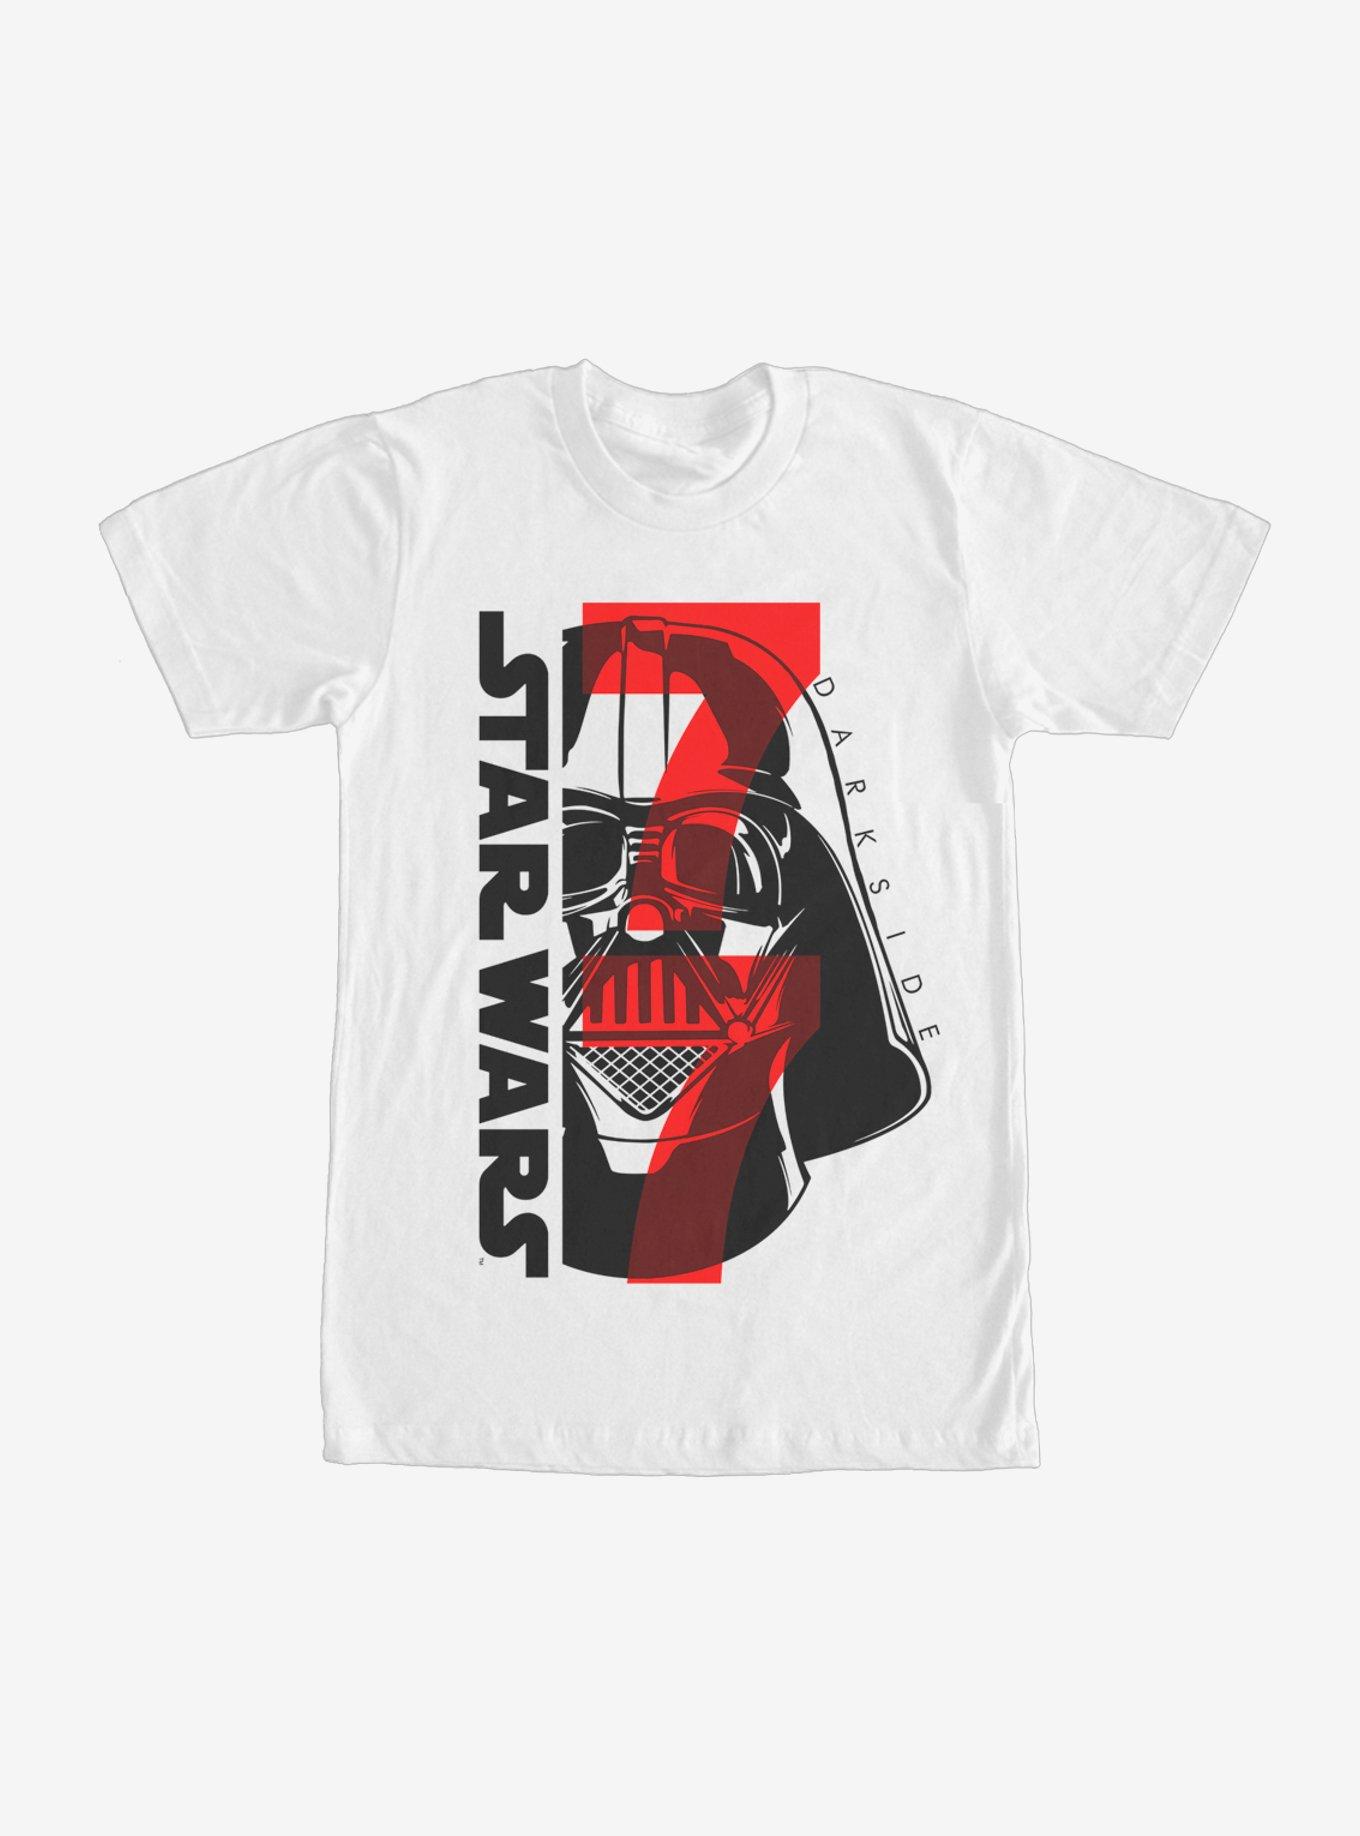 Star Wars Dark Side 77 T-Shirt